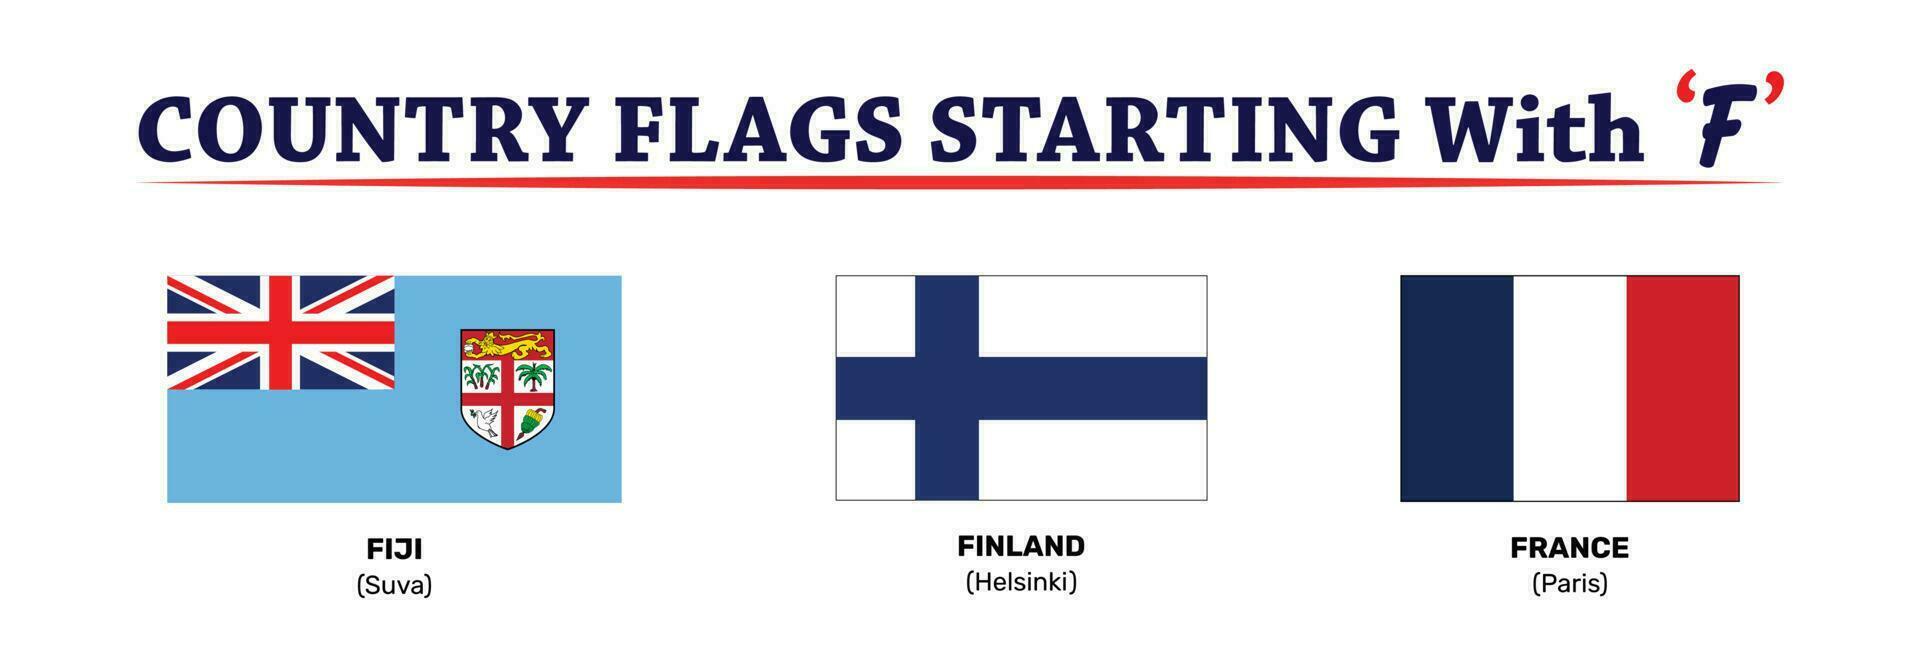 globaal vlaggen vector reeks van vlak schild pictogrammen met land vlaggen met de brief f. compleet verzameling van land vlaggen van in de omgeving van de wereld en continent. vector illustratie